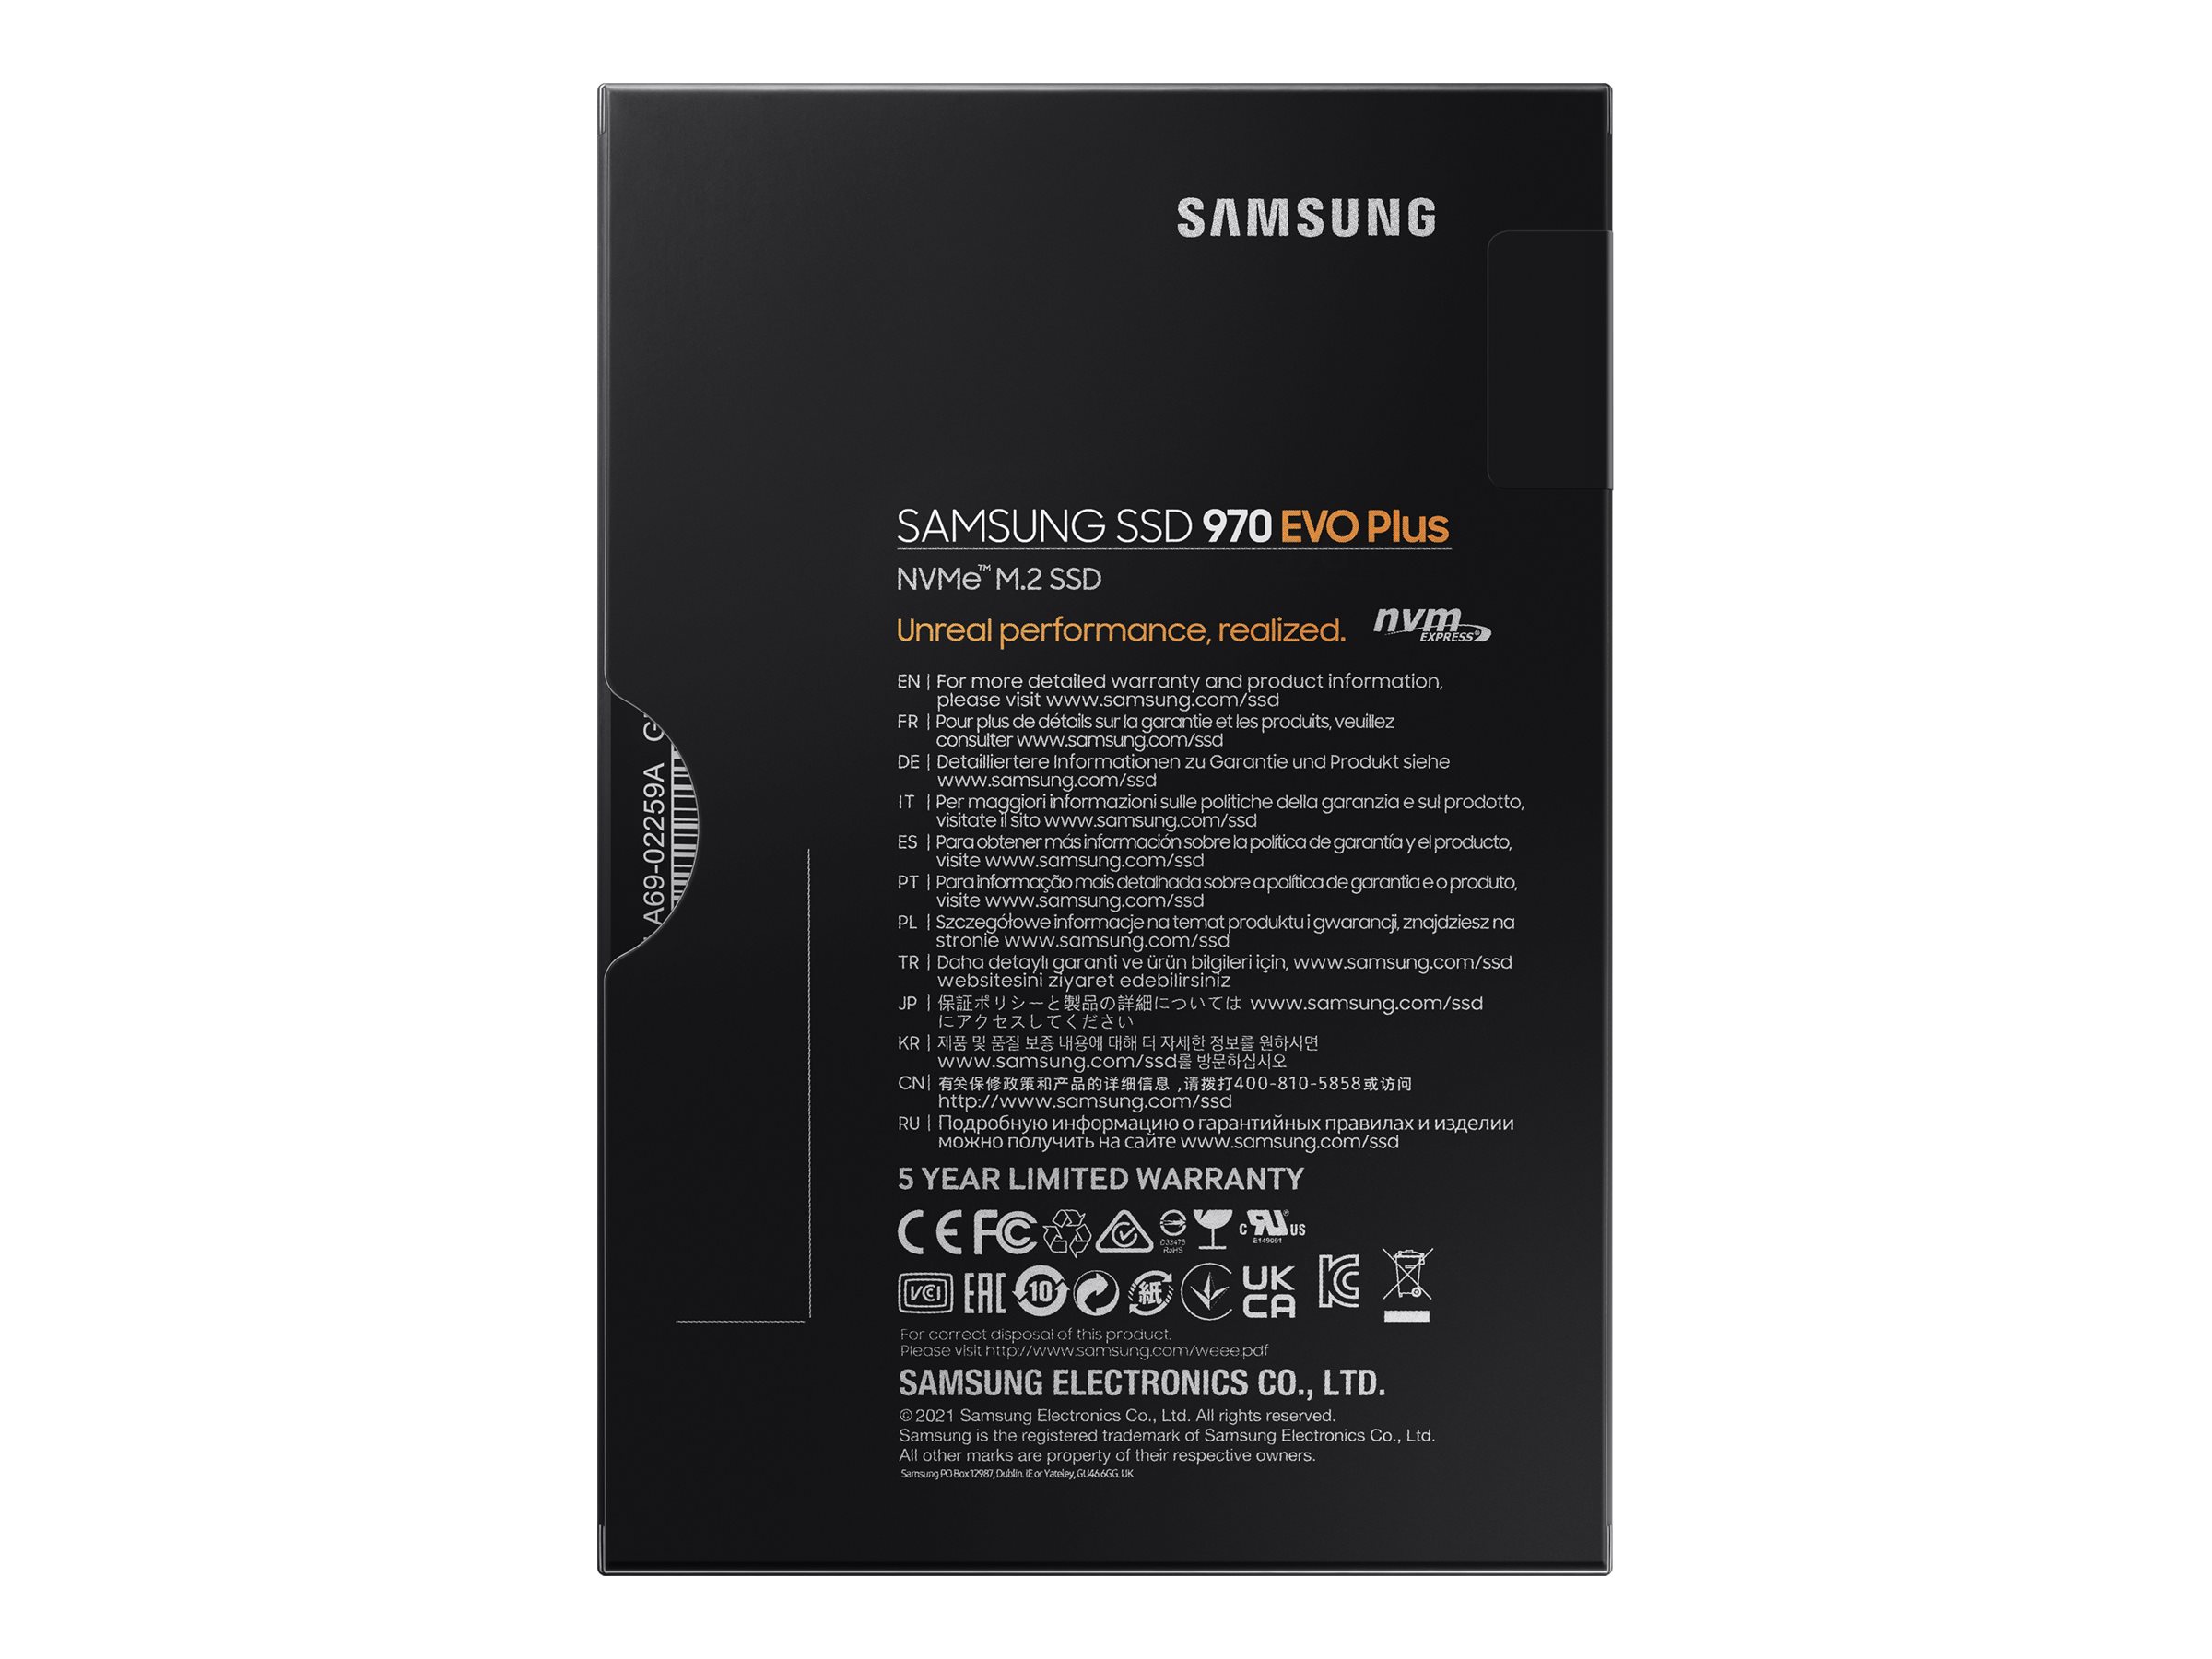 Samsung 970 EVO Plus: Với ổ cứng SSD Samsung 970 EVO Plus, bạn sẽ được trải nghiệm tốc độ đọc/ghi cực nhanh, giảm thiểu thời gian chờ đợi, tăng hiệu suất làm việc và giải trí. Hãy xem hình ảnh liên quan để khám phá thêm tính năng của sản phẩm này.